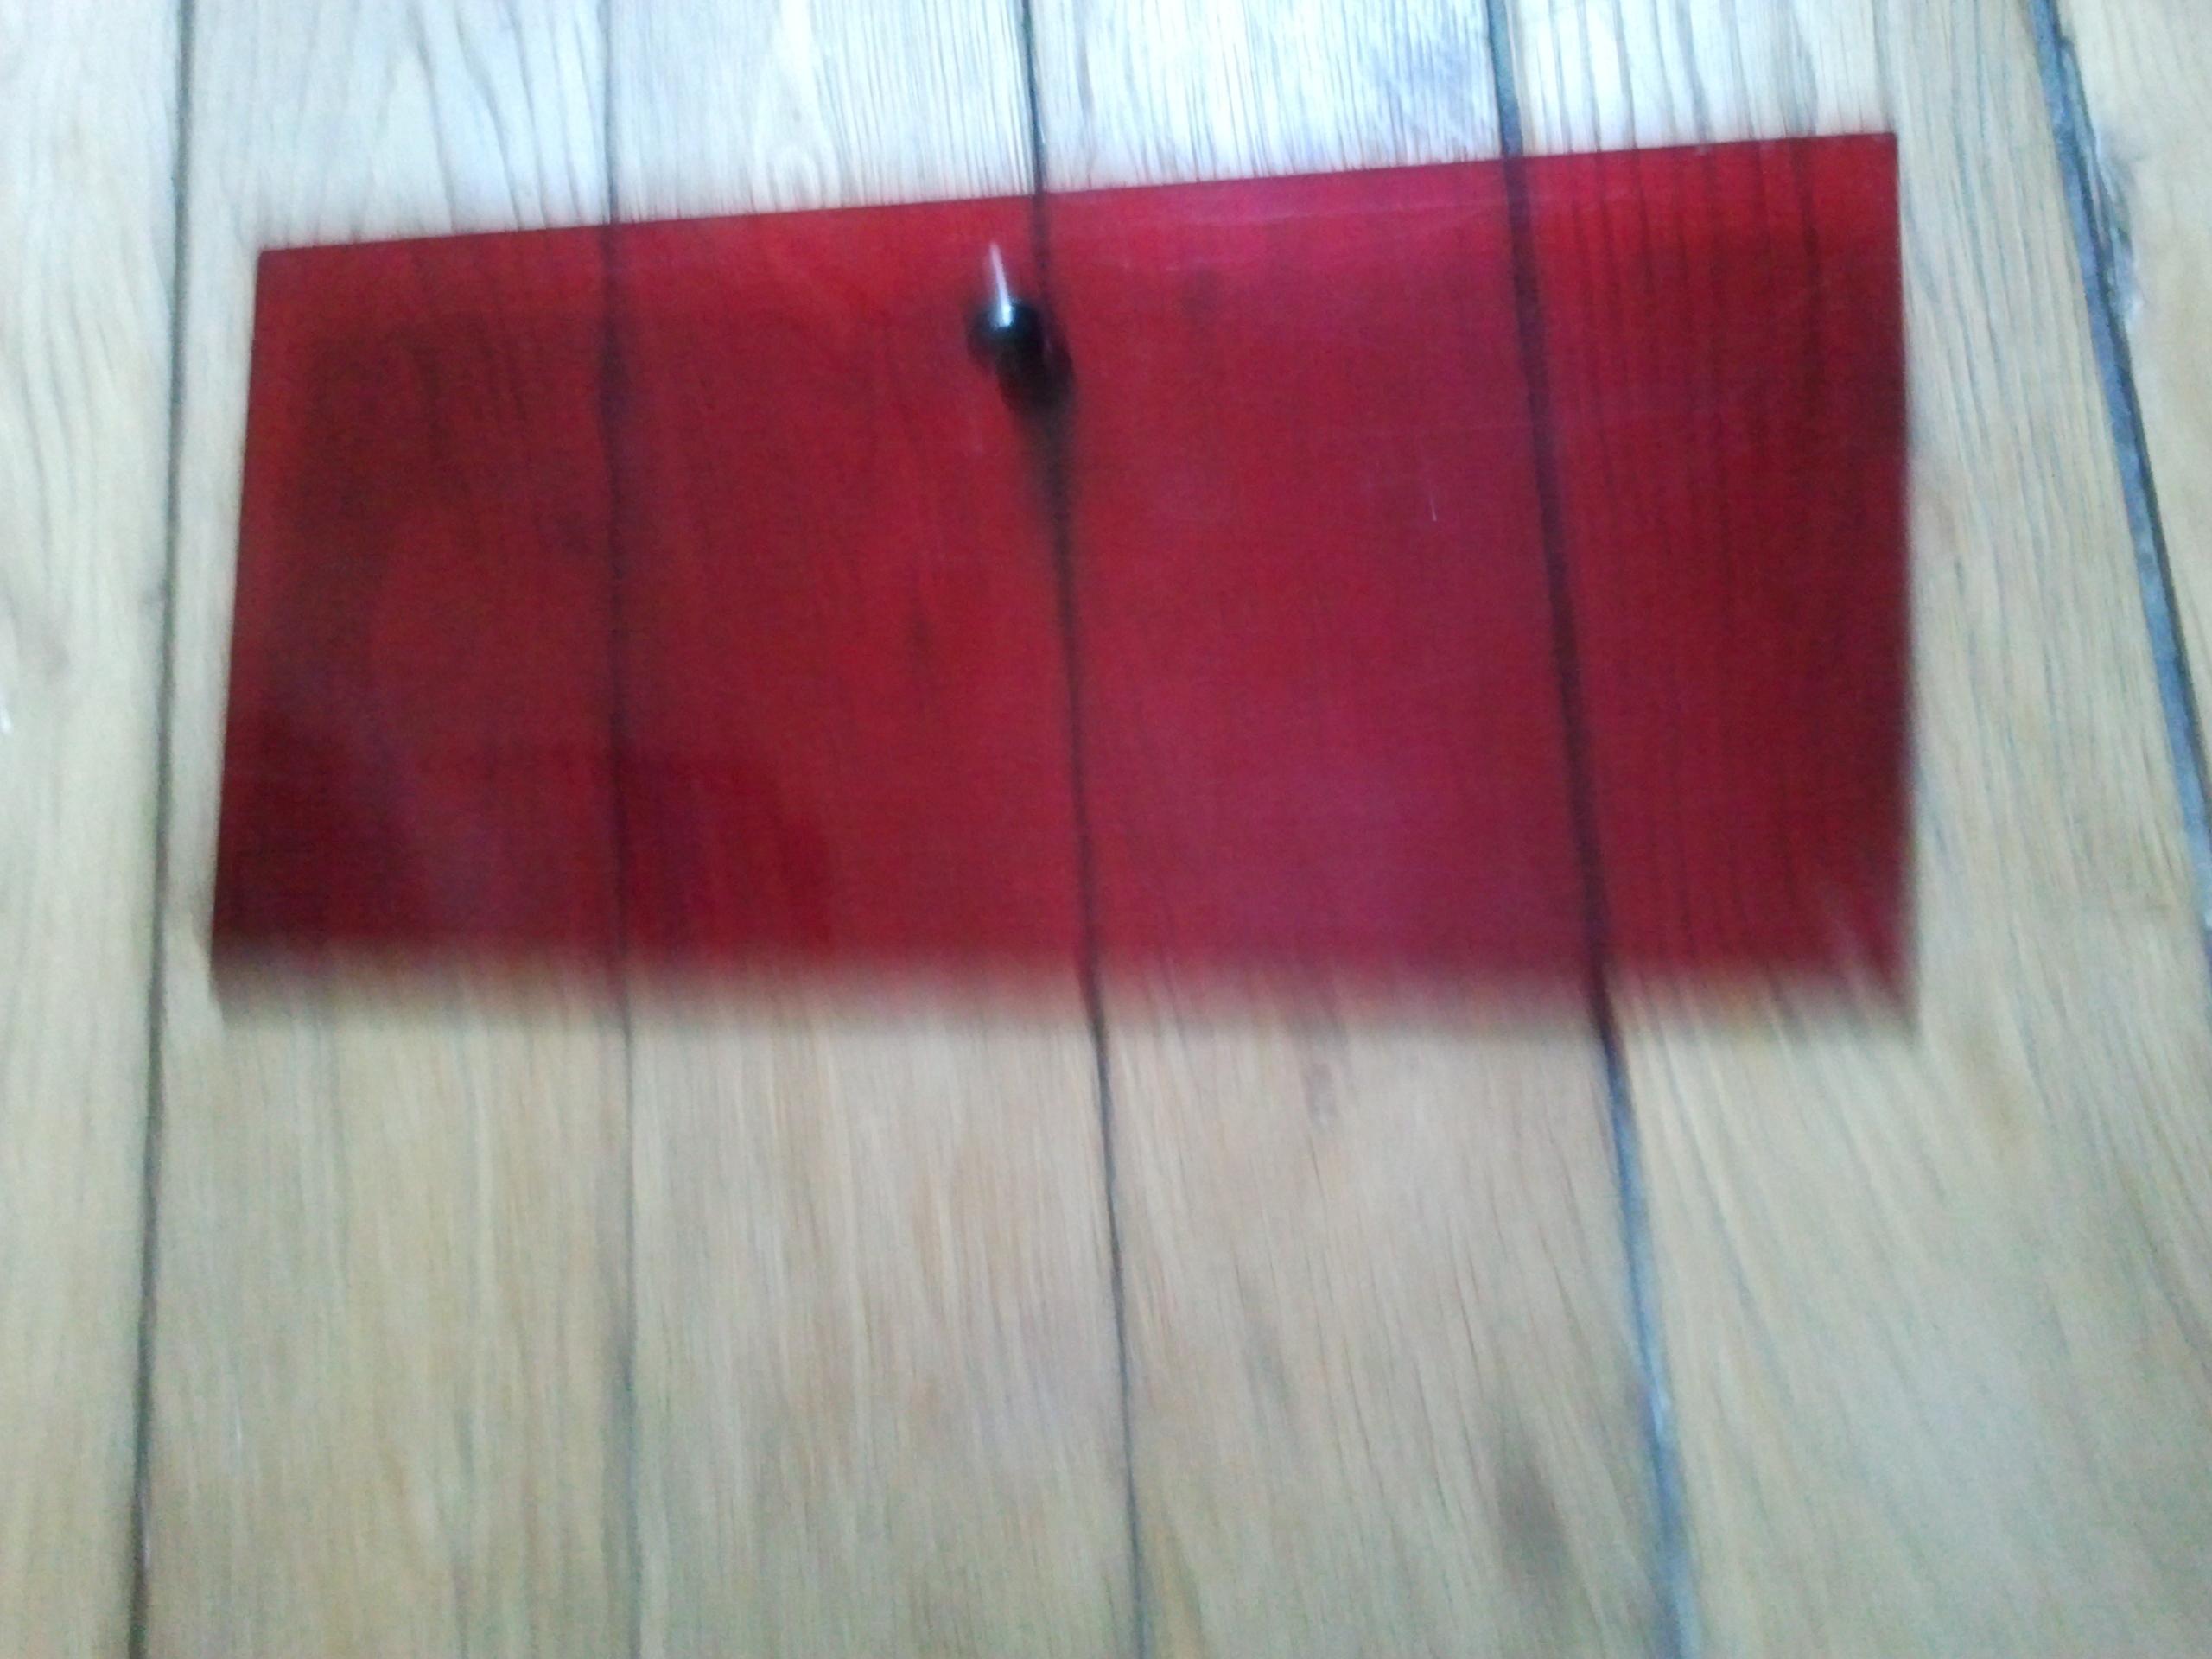 troc de troc porte en plexiglas rouge transparente 34 x 16,5 image 1